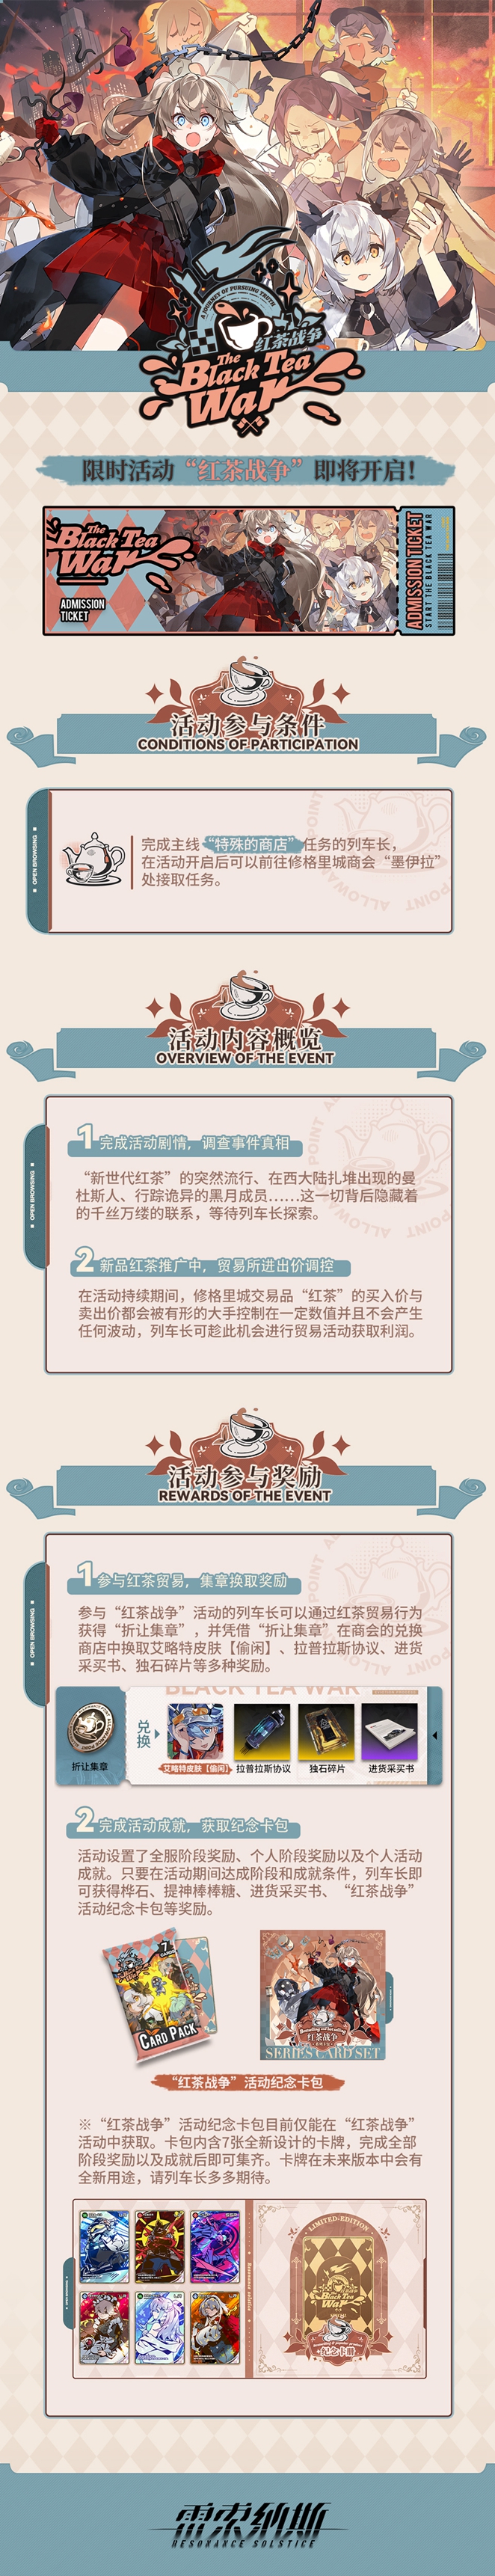 《雷索纳斯》 活动“红茶战争” 玩法介绍